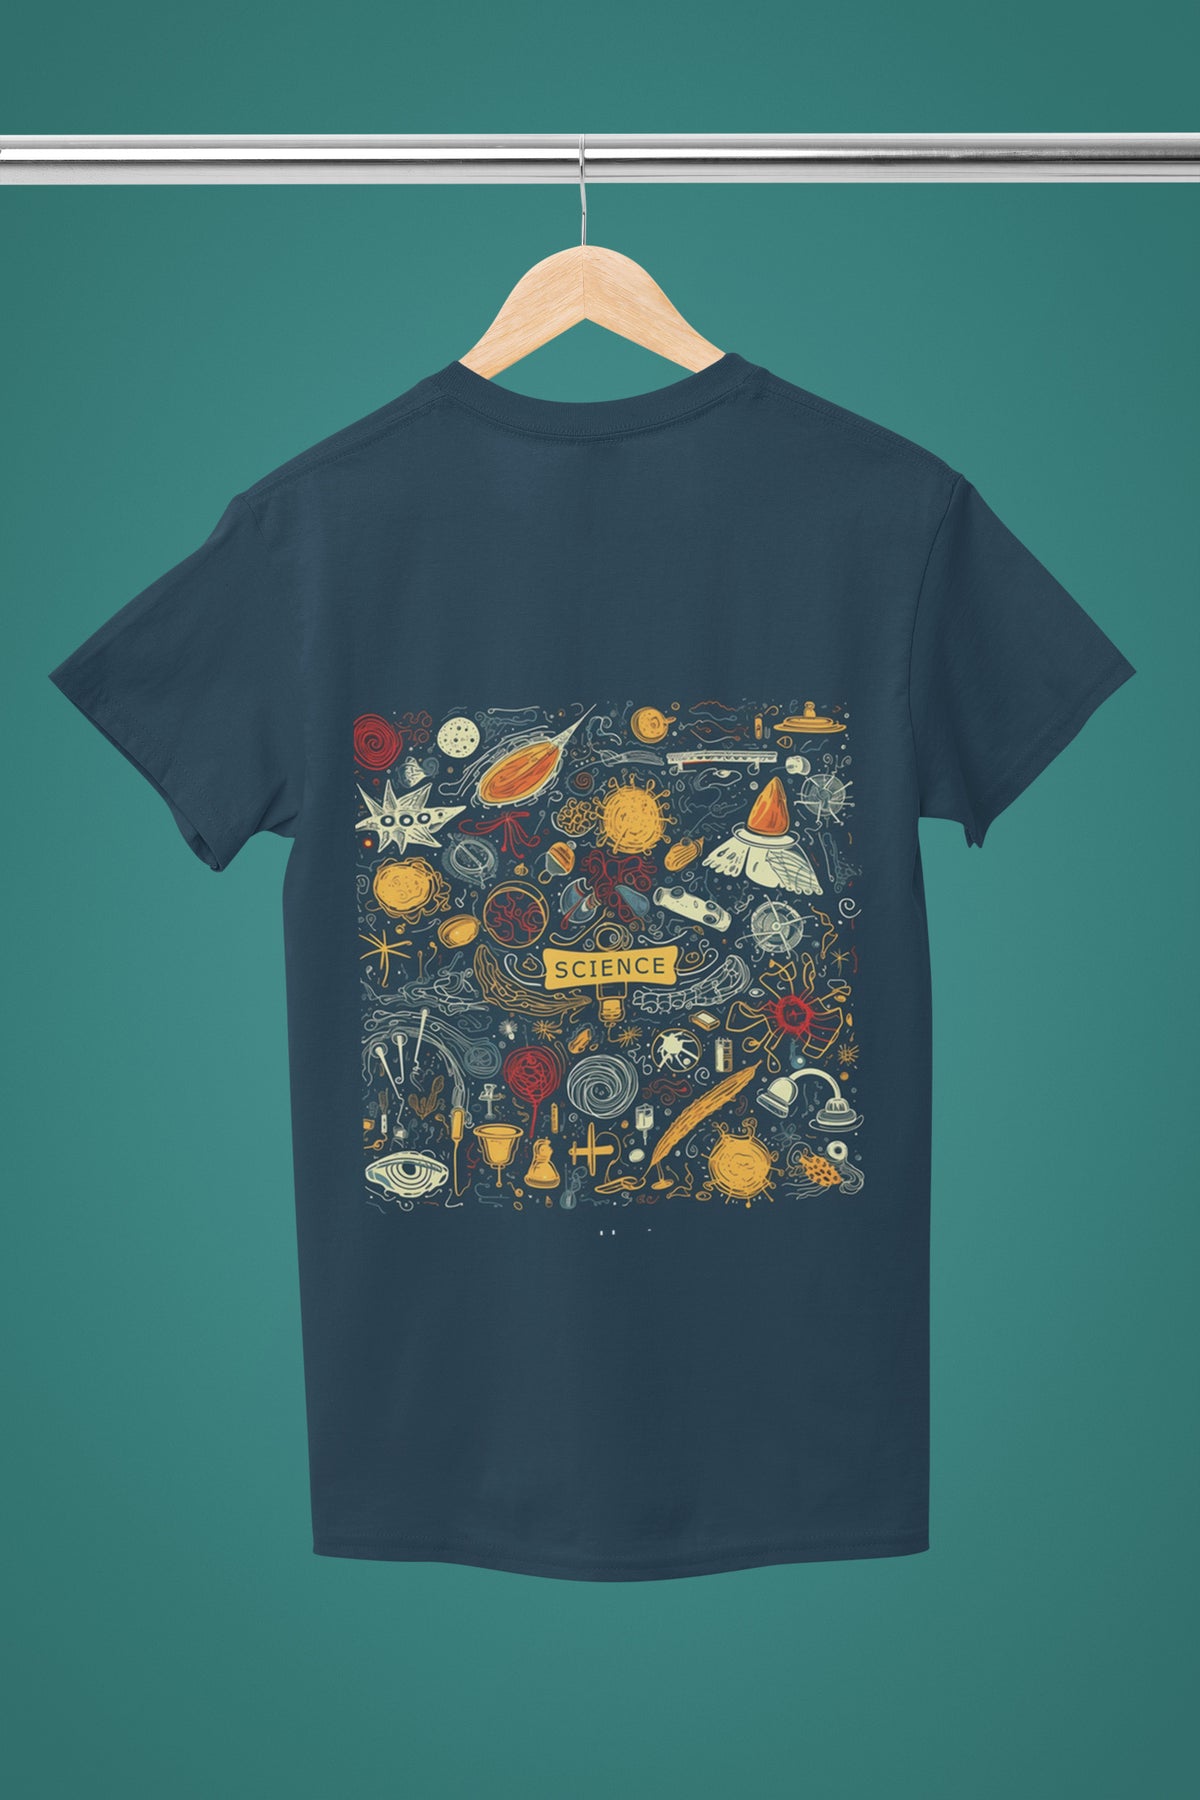 Journey into Imagination: Joyful premium Roundneck Cotton T-Shirt - Curious Minds Expand Horizons